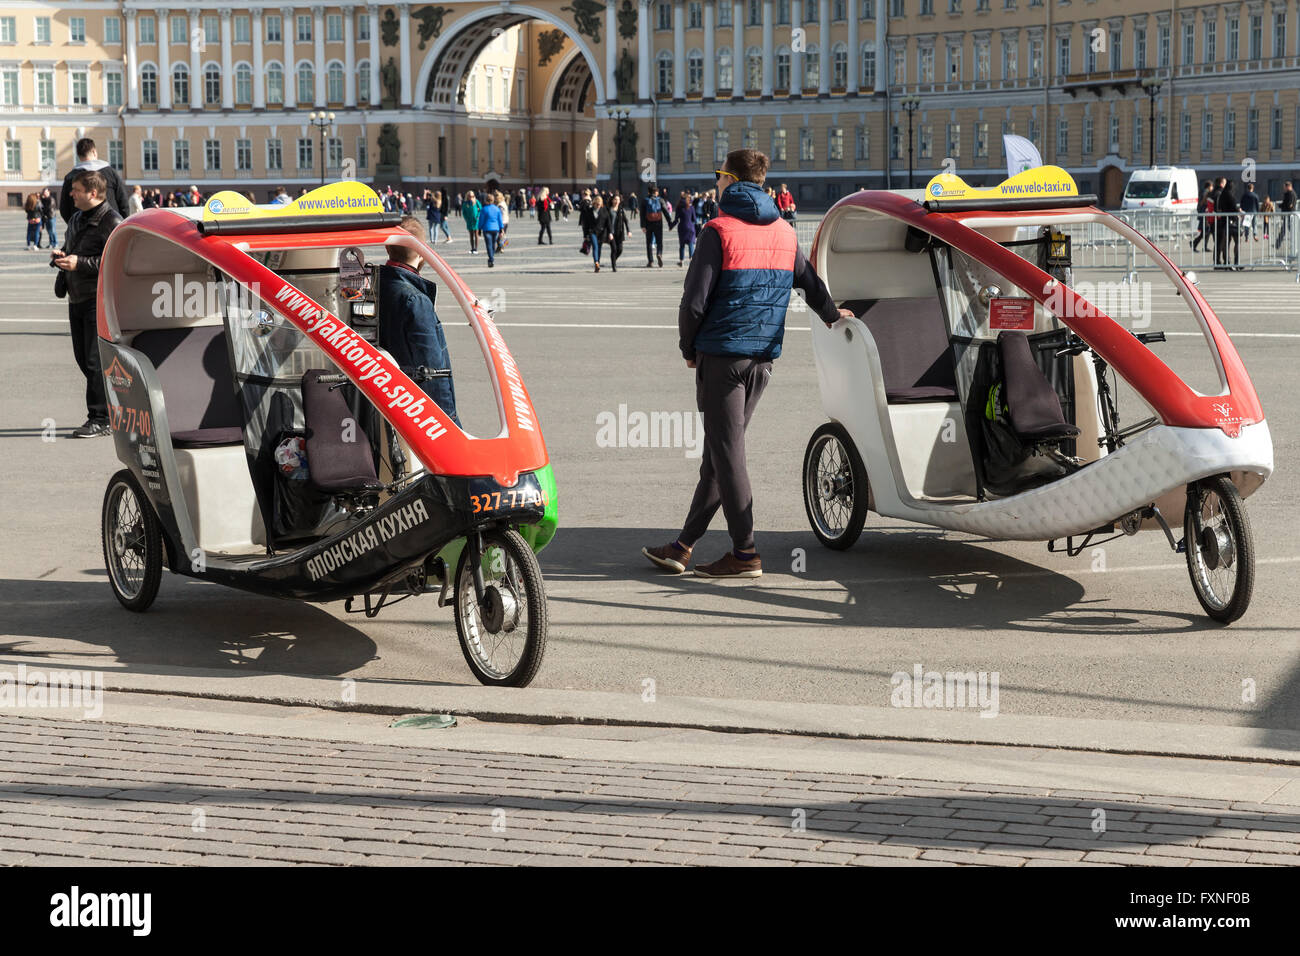 Saint-pétersbourg, Russie - Avril 9, 2016 Location : les chauffeurs de taxi attendent les passagers sur la place du palais de Saint-Pétersbourg Banque D'Images